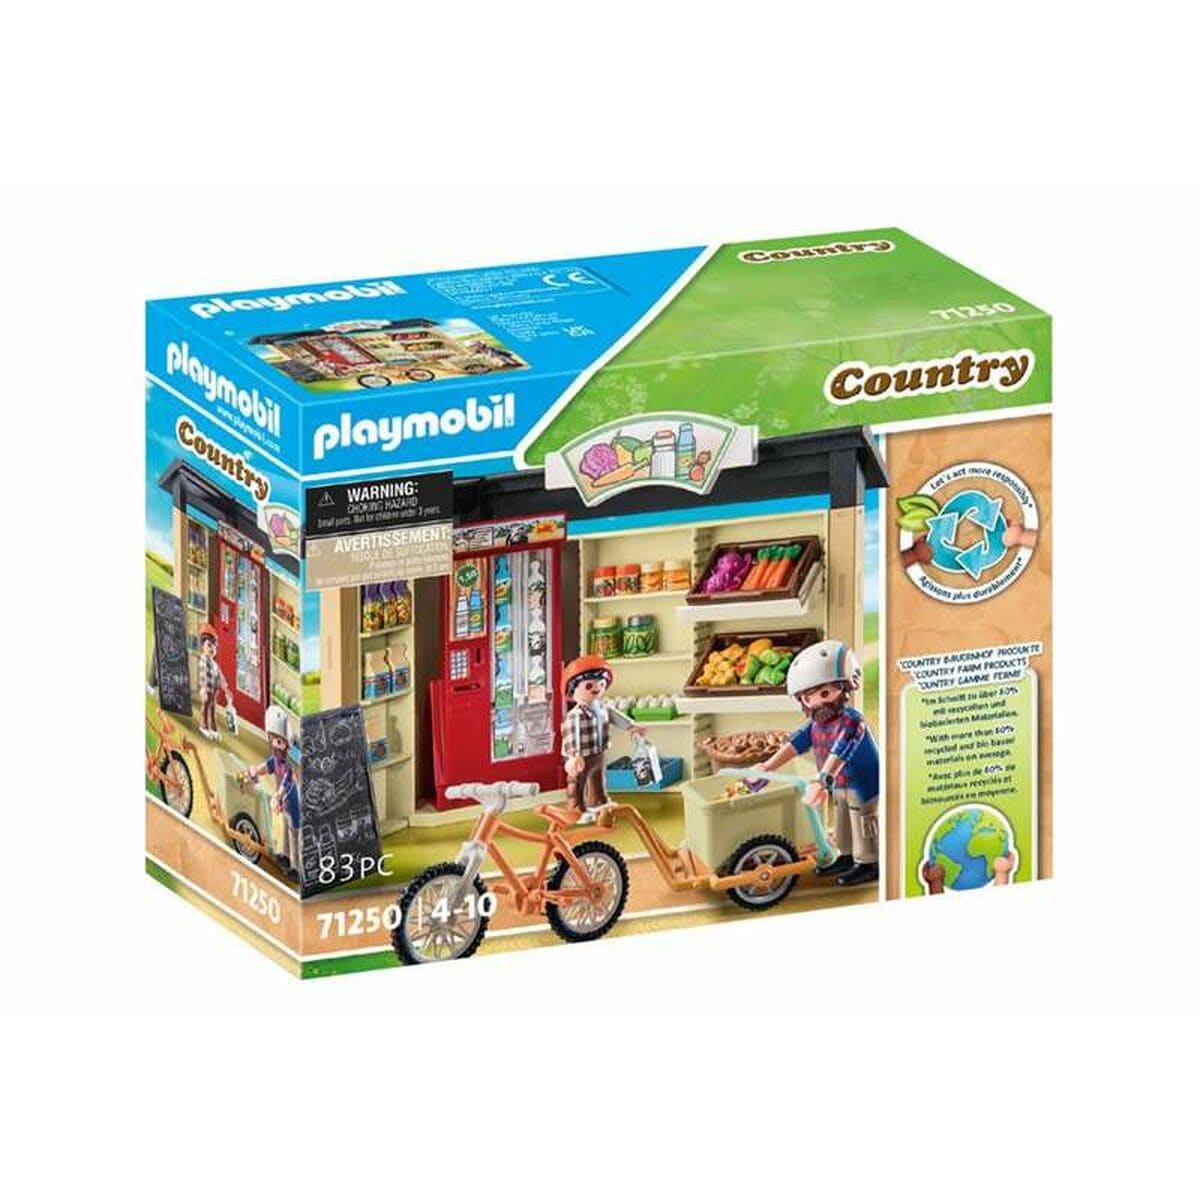 Playmobil Spielzeug | Kostüme > Spielzeug und Spiele > Weiteres spielzeug Playset Playmobil 71250 24-Hour Farm Store 83 Stücke